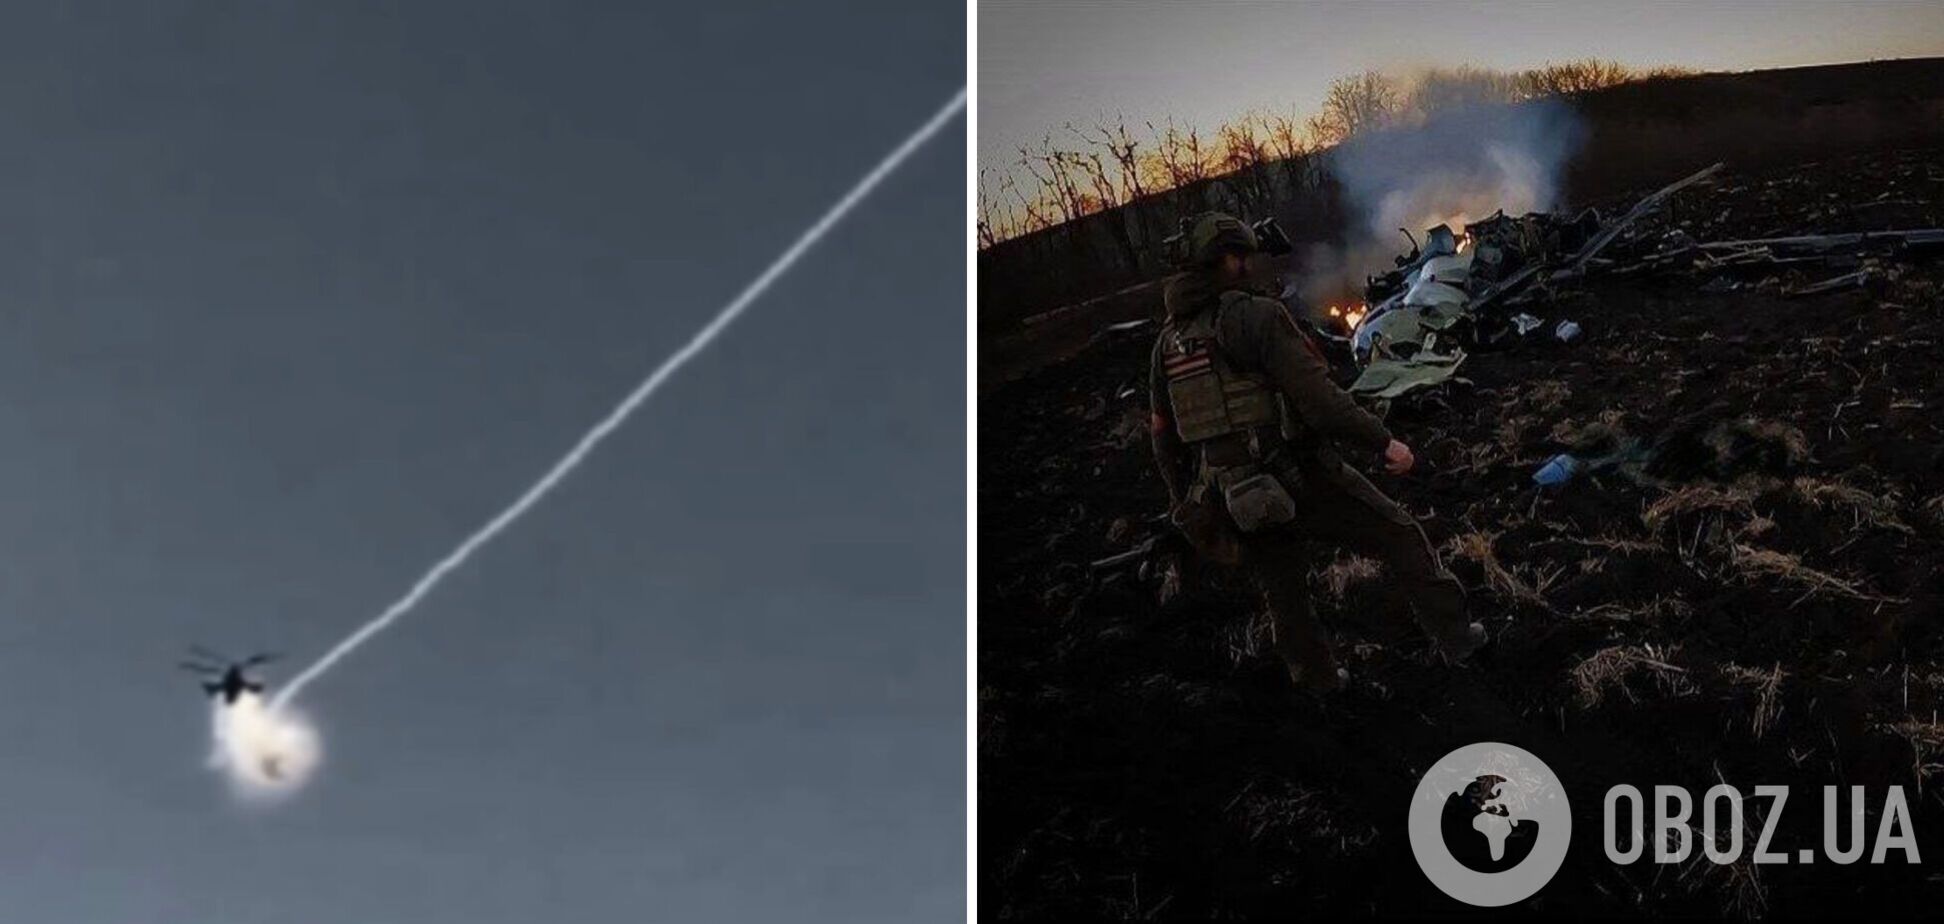 Российский 'Аллигатор' успешно 'сбил' собой украинскую зенитную ракету и сгорел: в сети показали видео